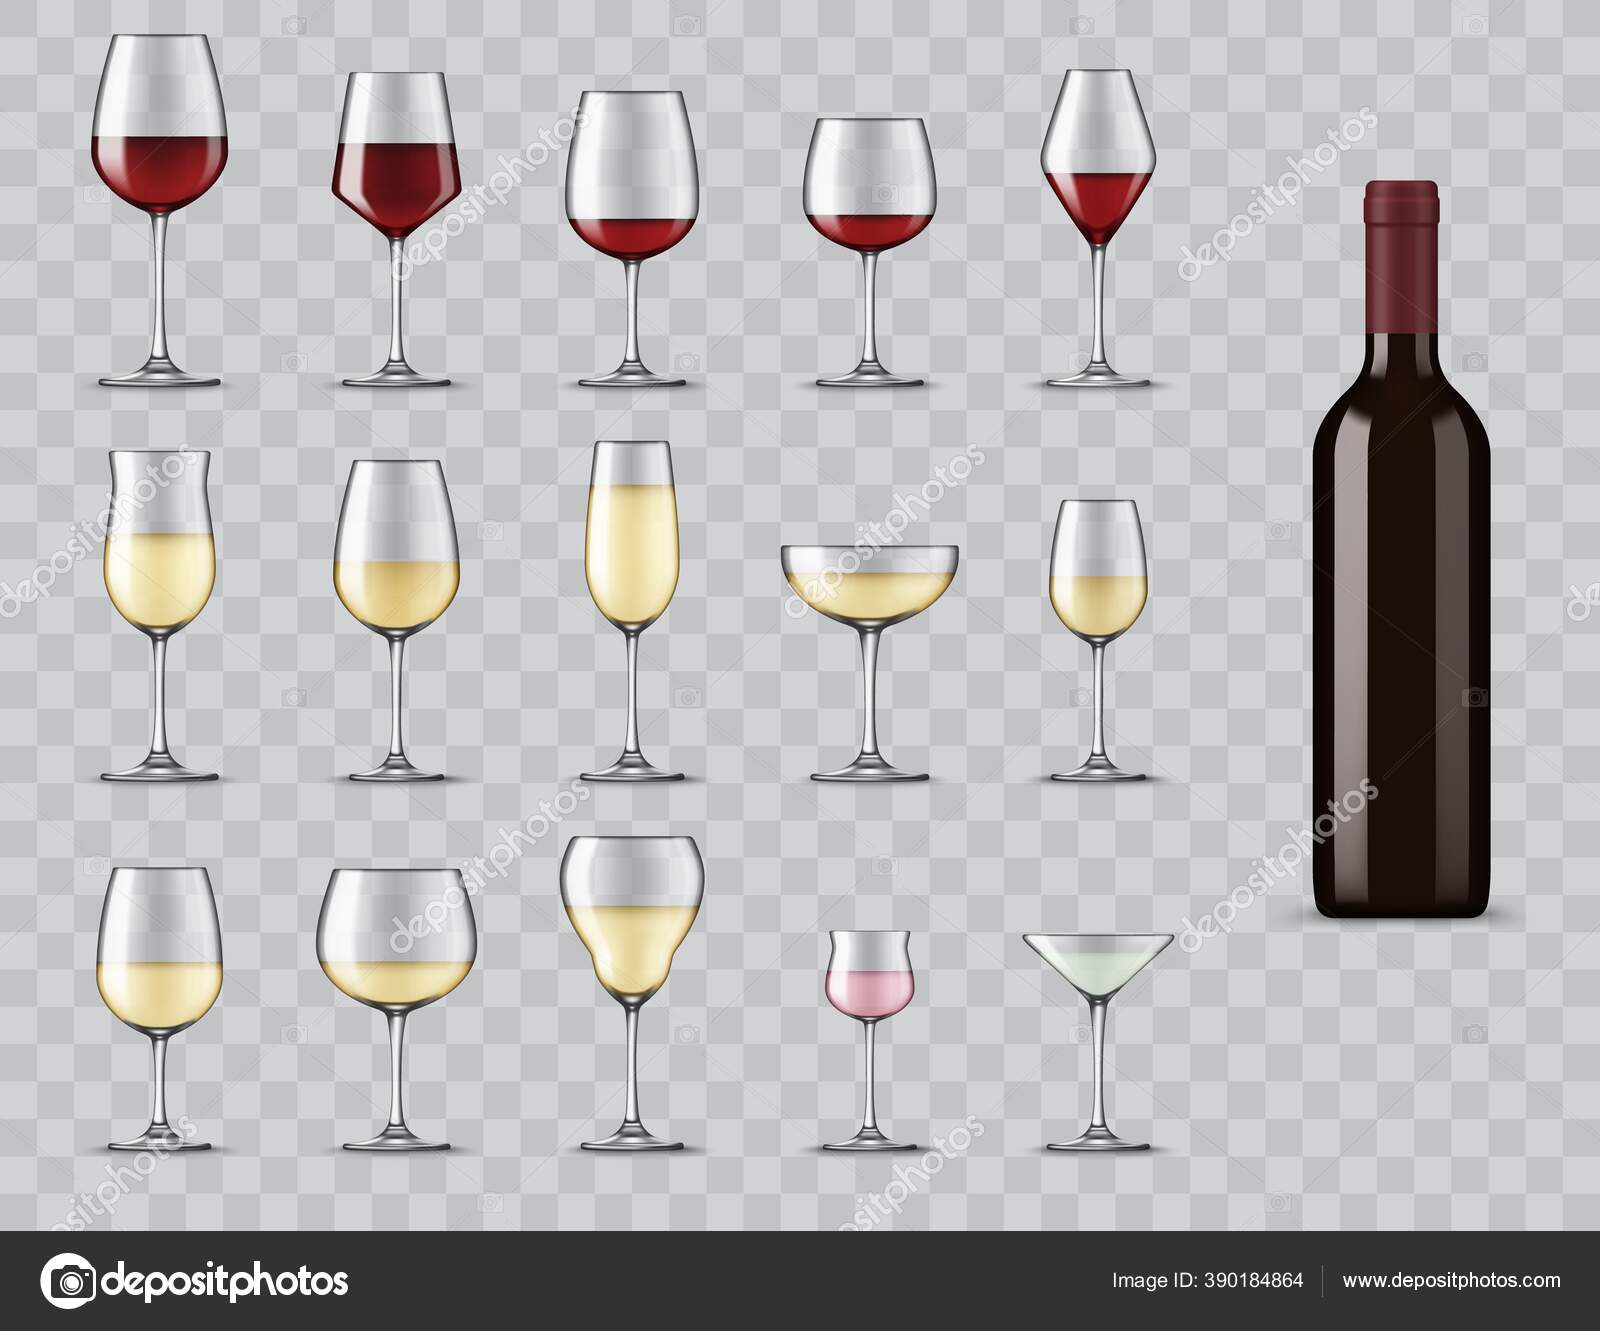 https://st4.depositphotos.com/1020070/39018/v/1600/depositphotos_390184864-stock-illustration-types-wine-glasses-realistic-bottle.jpg